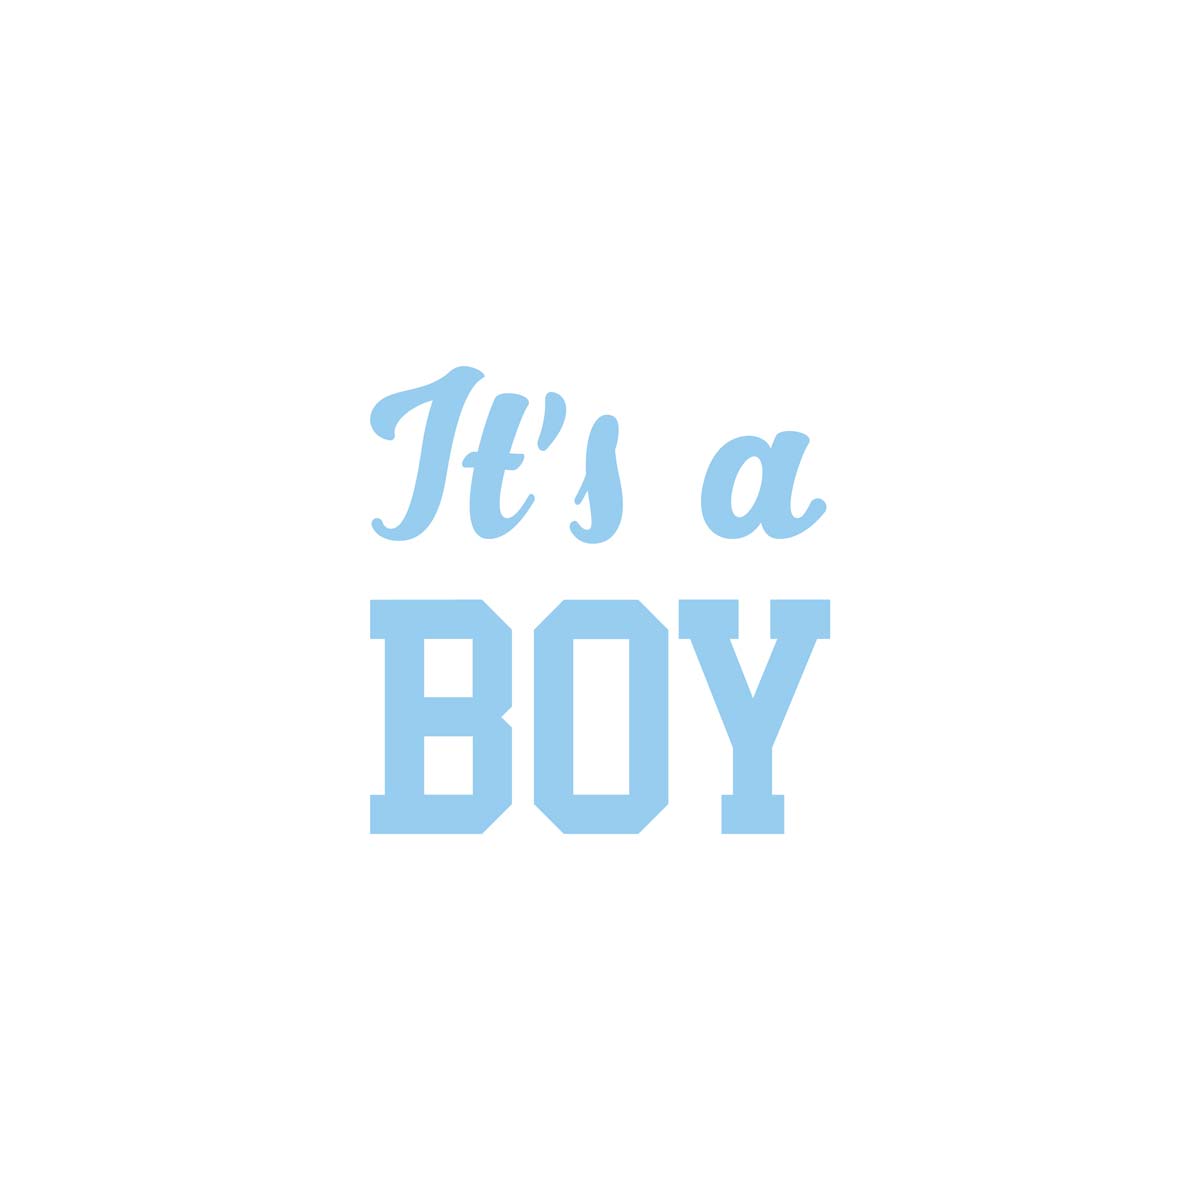 An boy